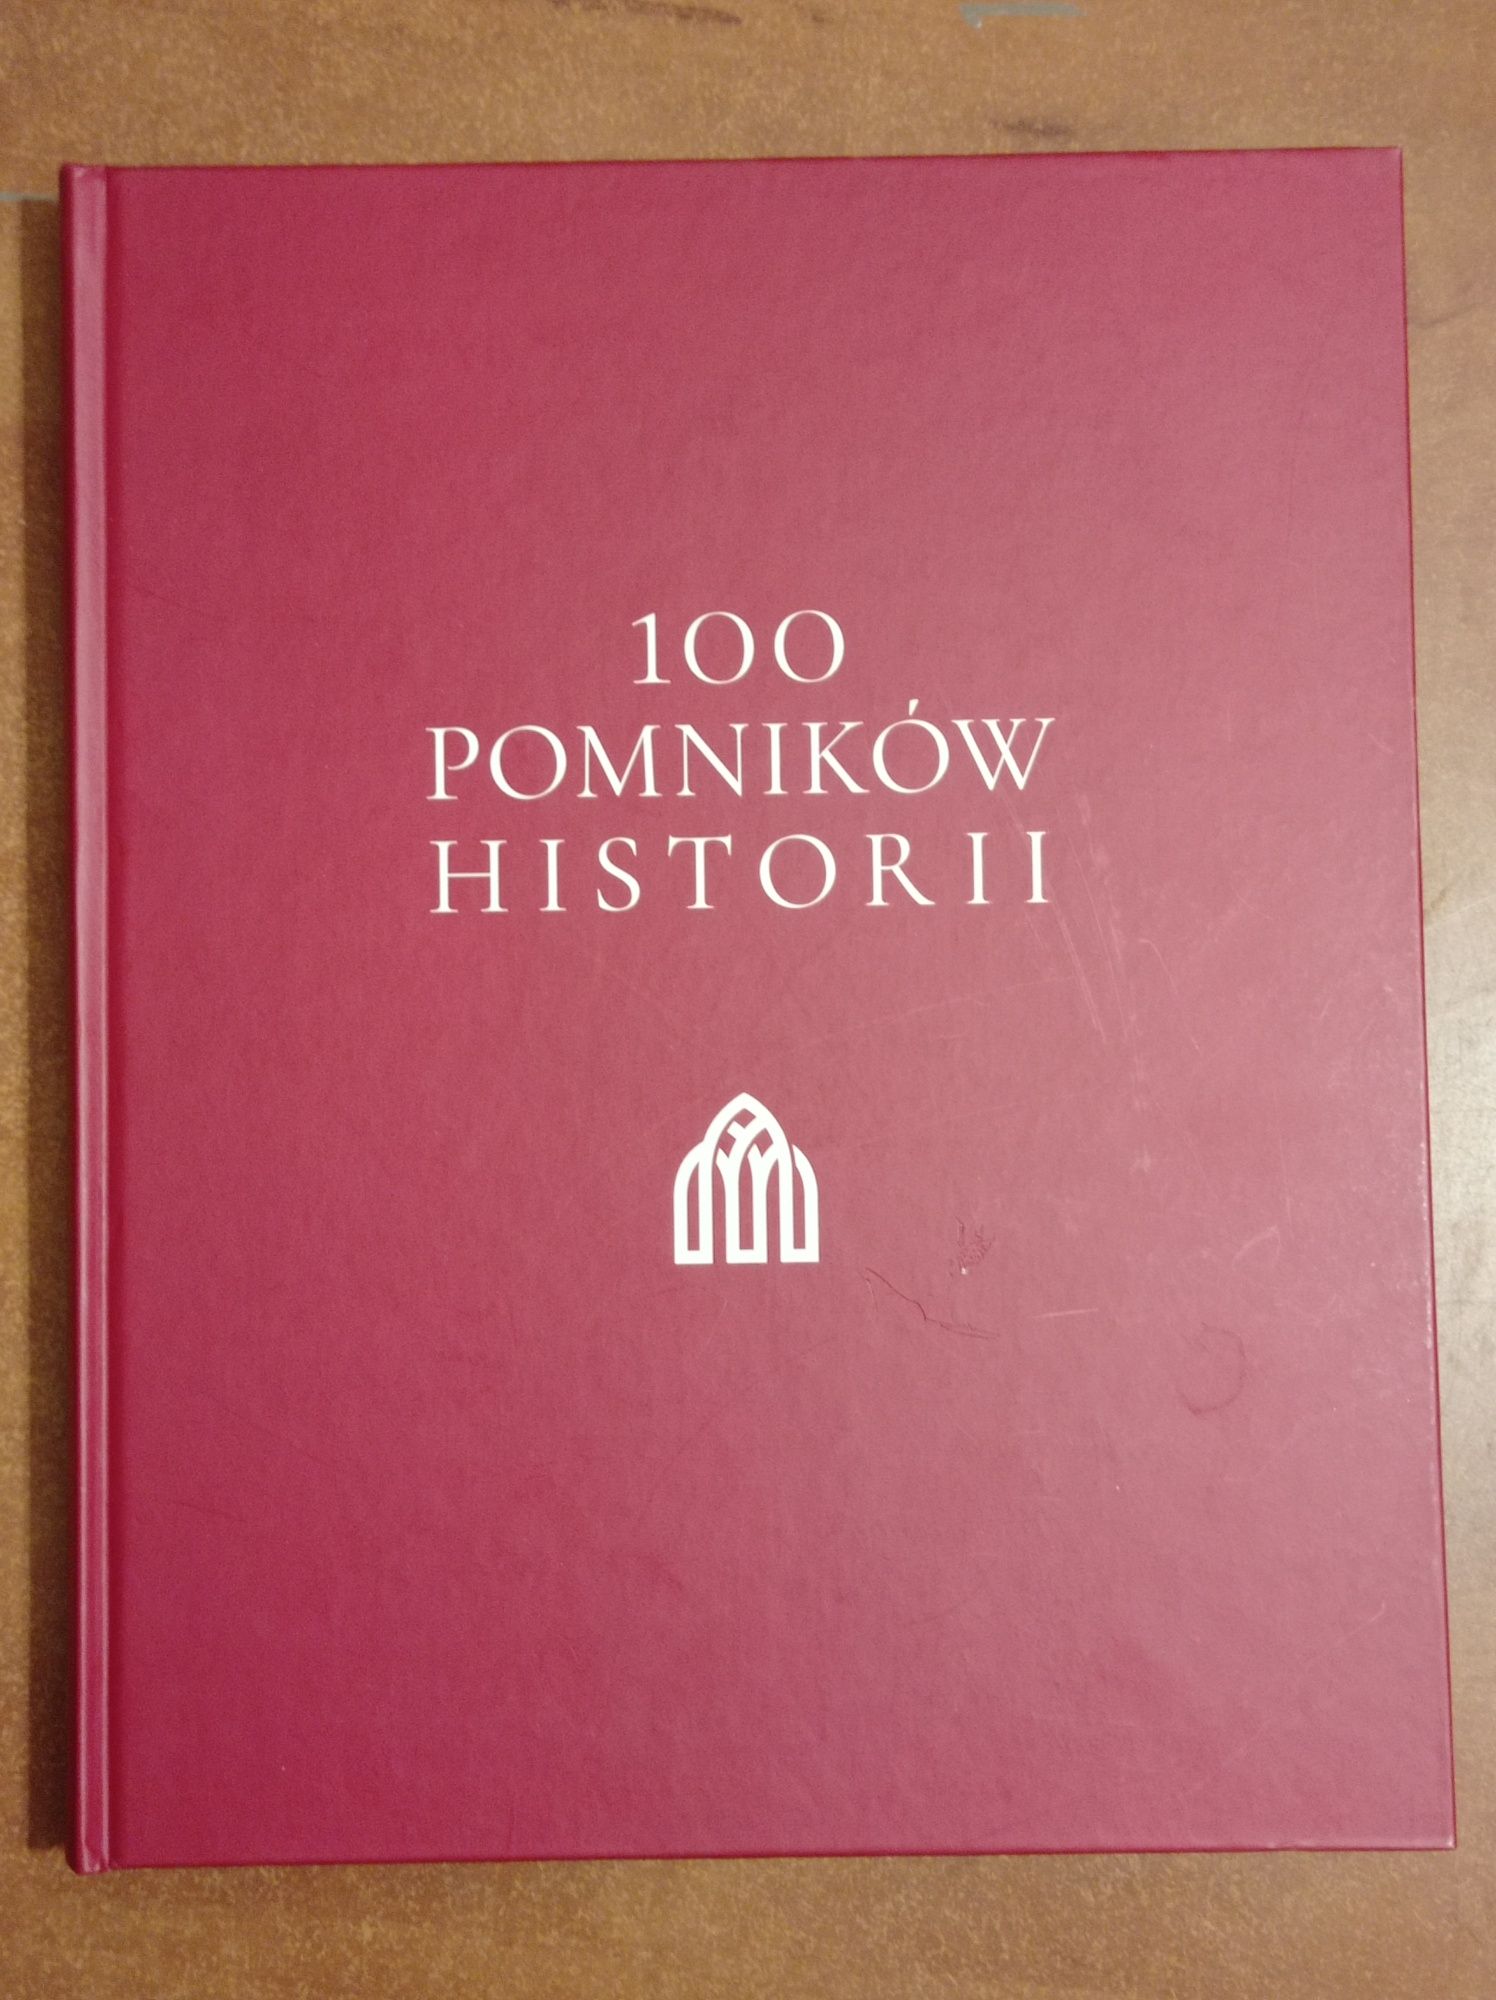 100 pomników historii Toruń dawniej i dziś Lubartów Kalisz